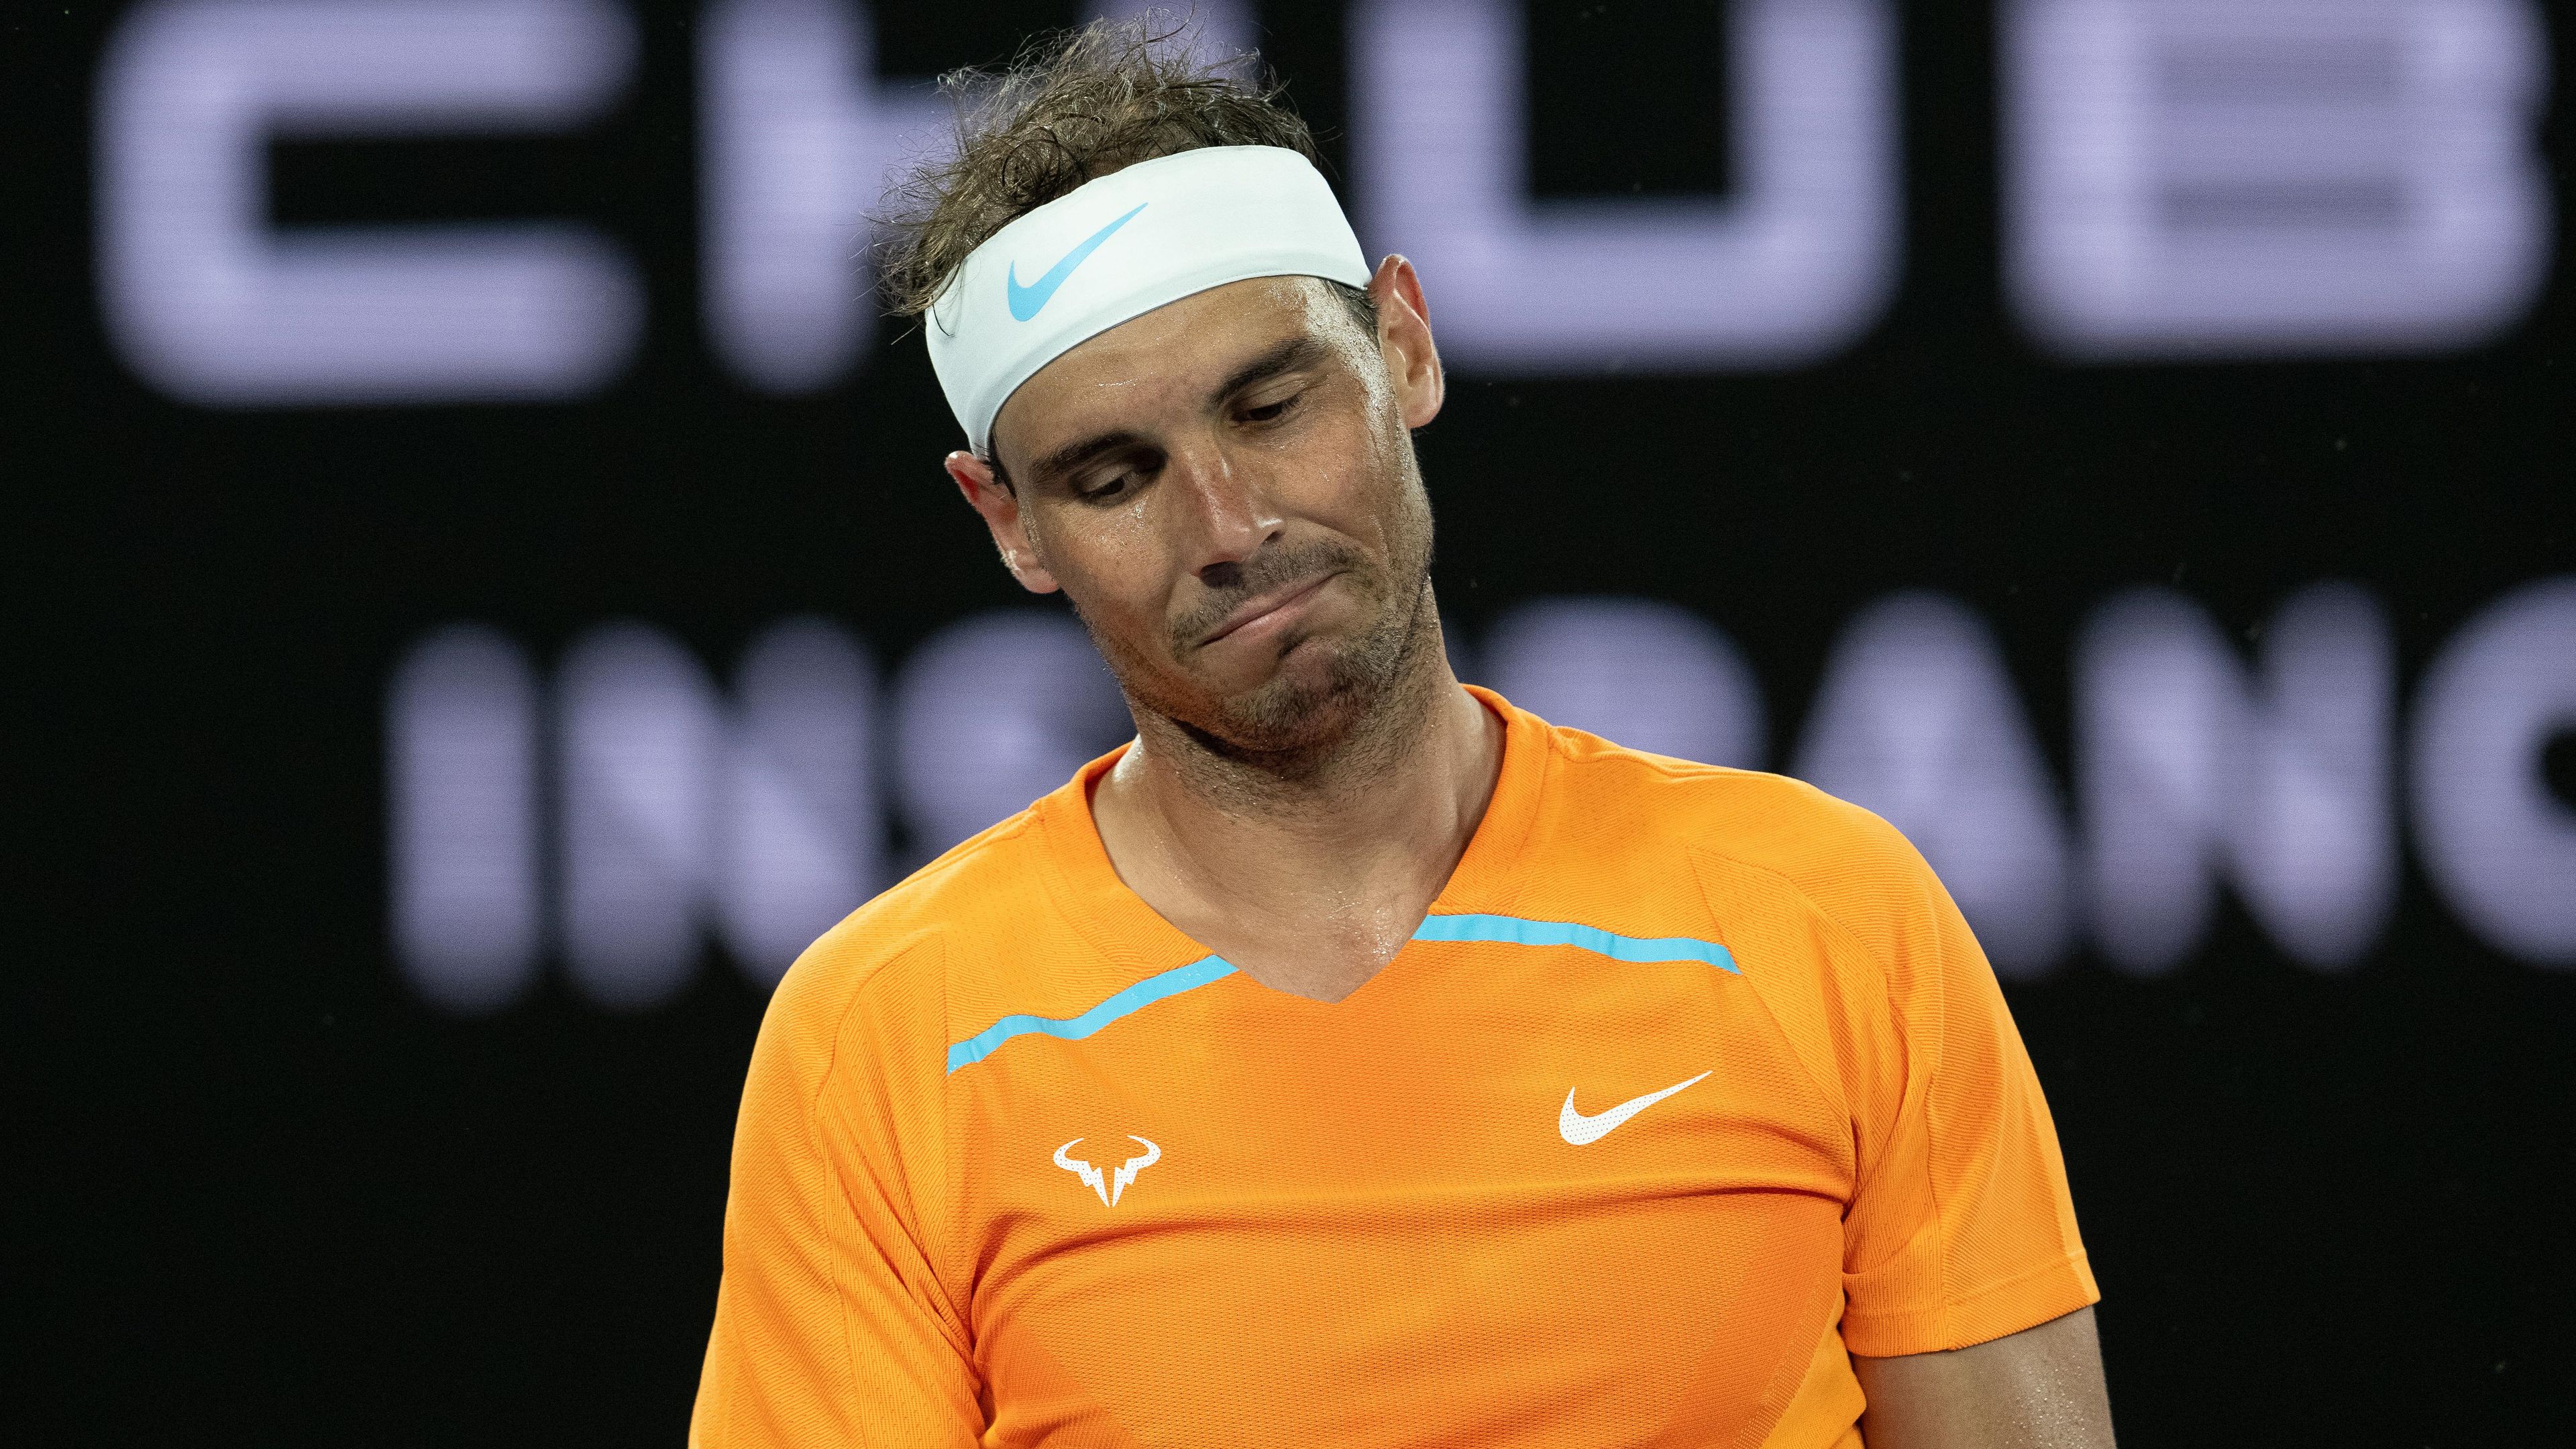 Rafael Nadal jelenleg sérült, az Australian Open óta nem versenyzett